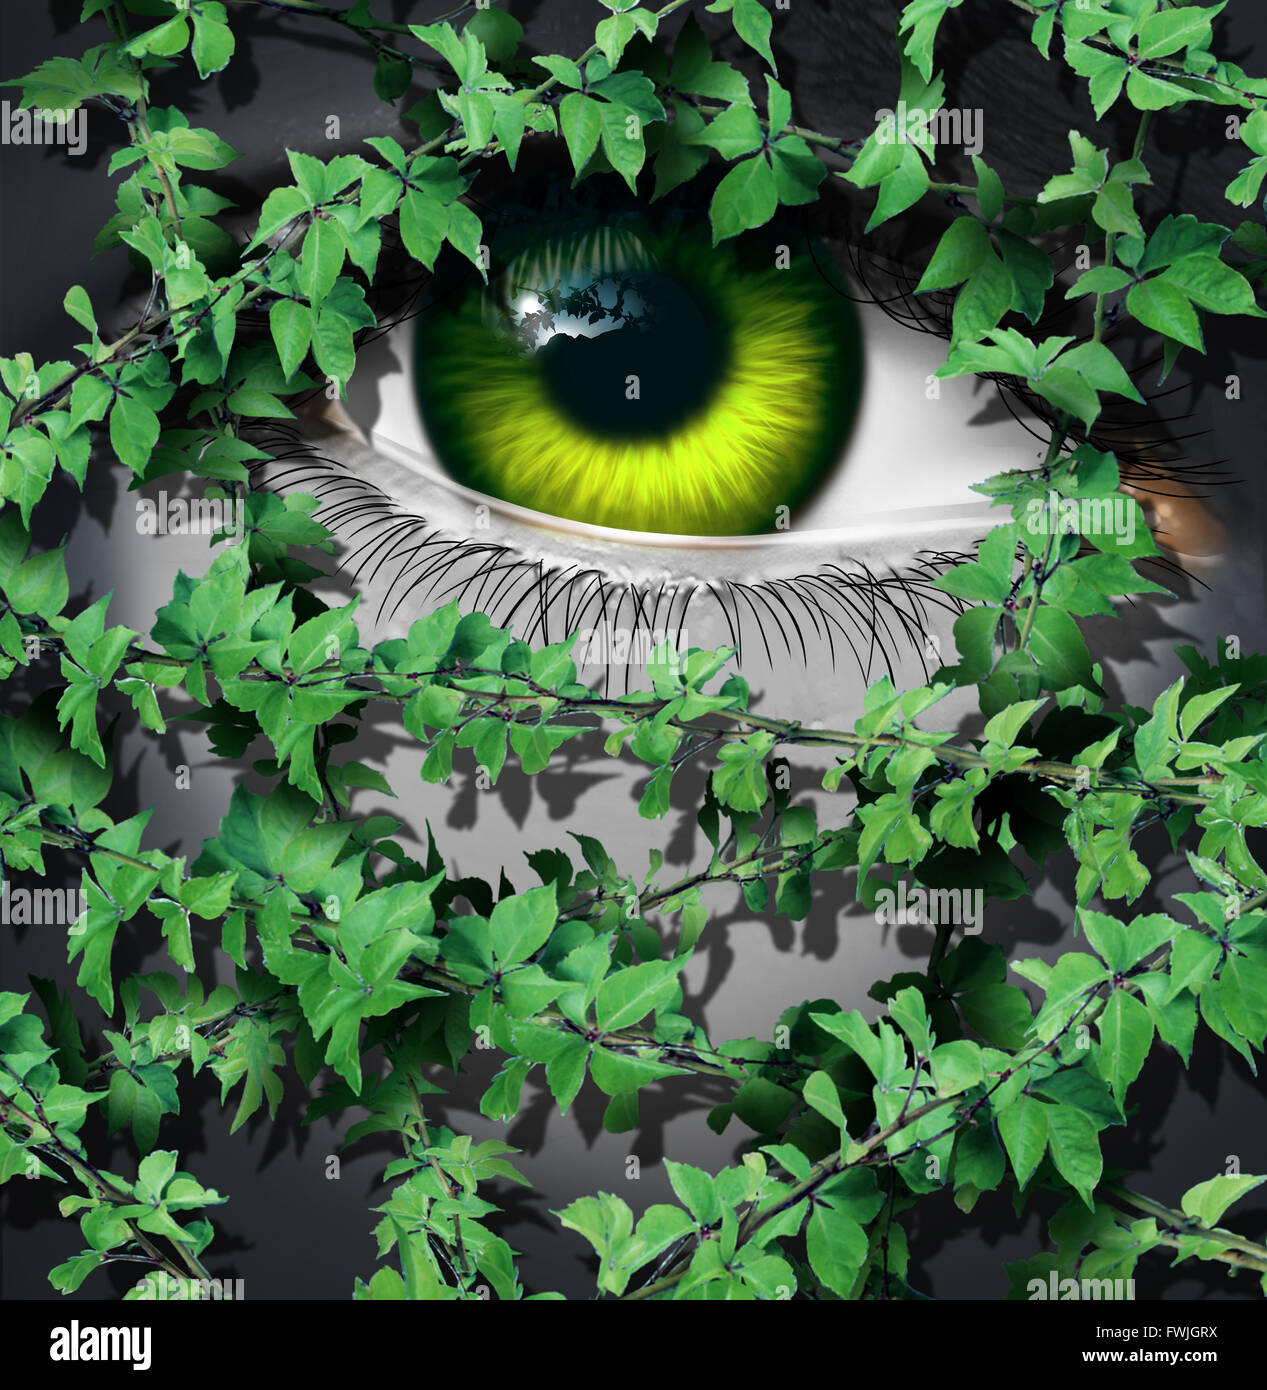 La natura umana come concetto verde dell'occhio di una persona guardando dietro un gruppo crescente di foglie di vite come un idea ambientale o un giorno di terra vision simbolo. Foto Stock